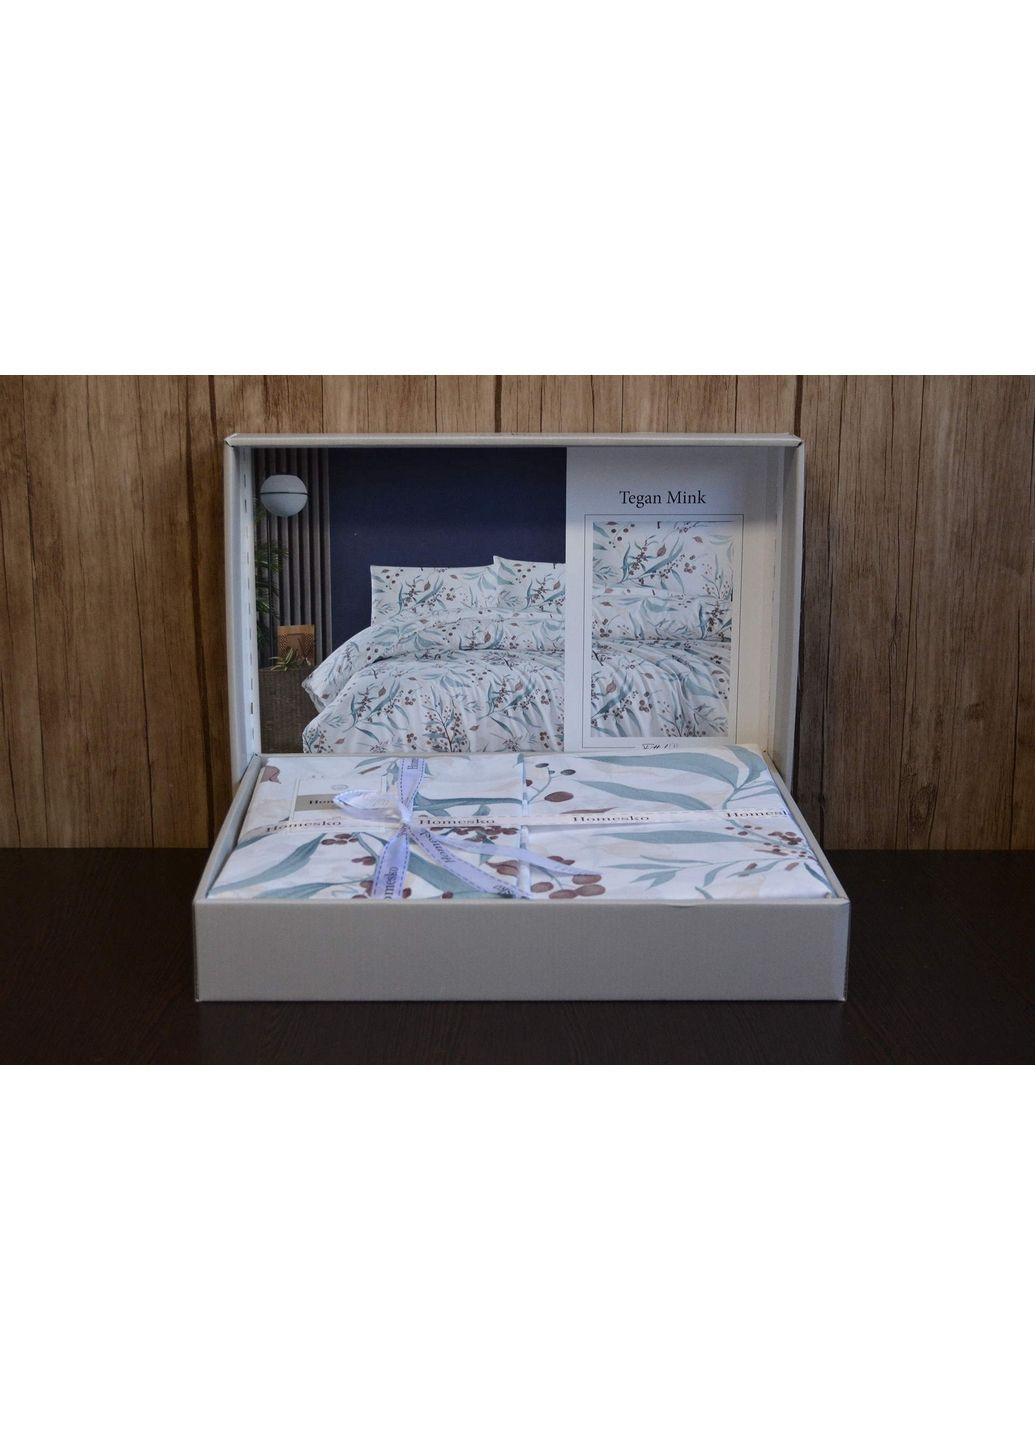 Спальный комплект постельного белья Homesco (288185531)